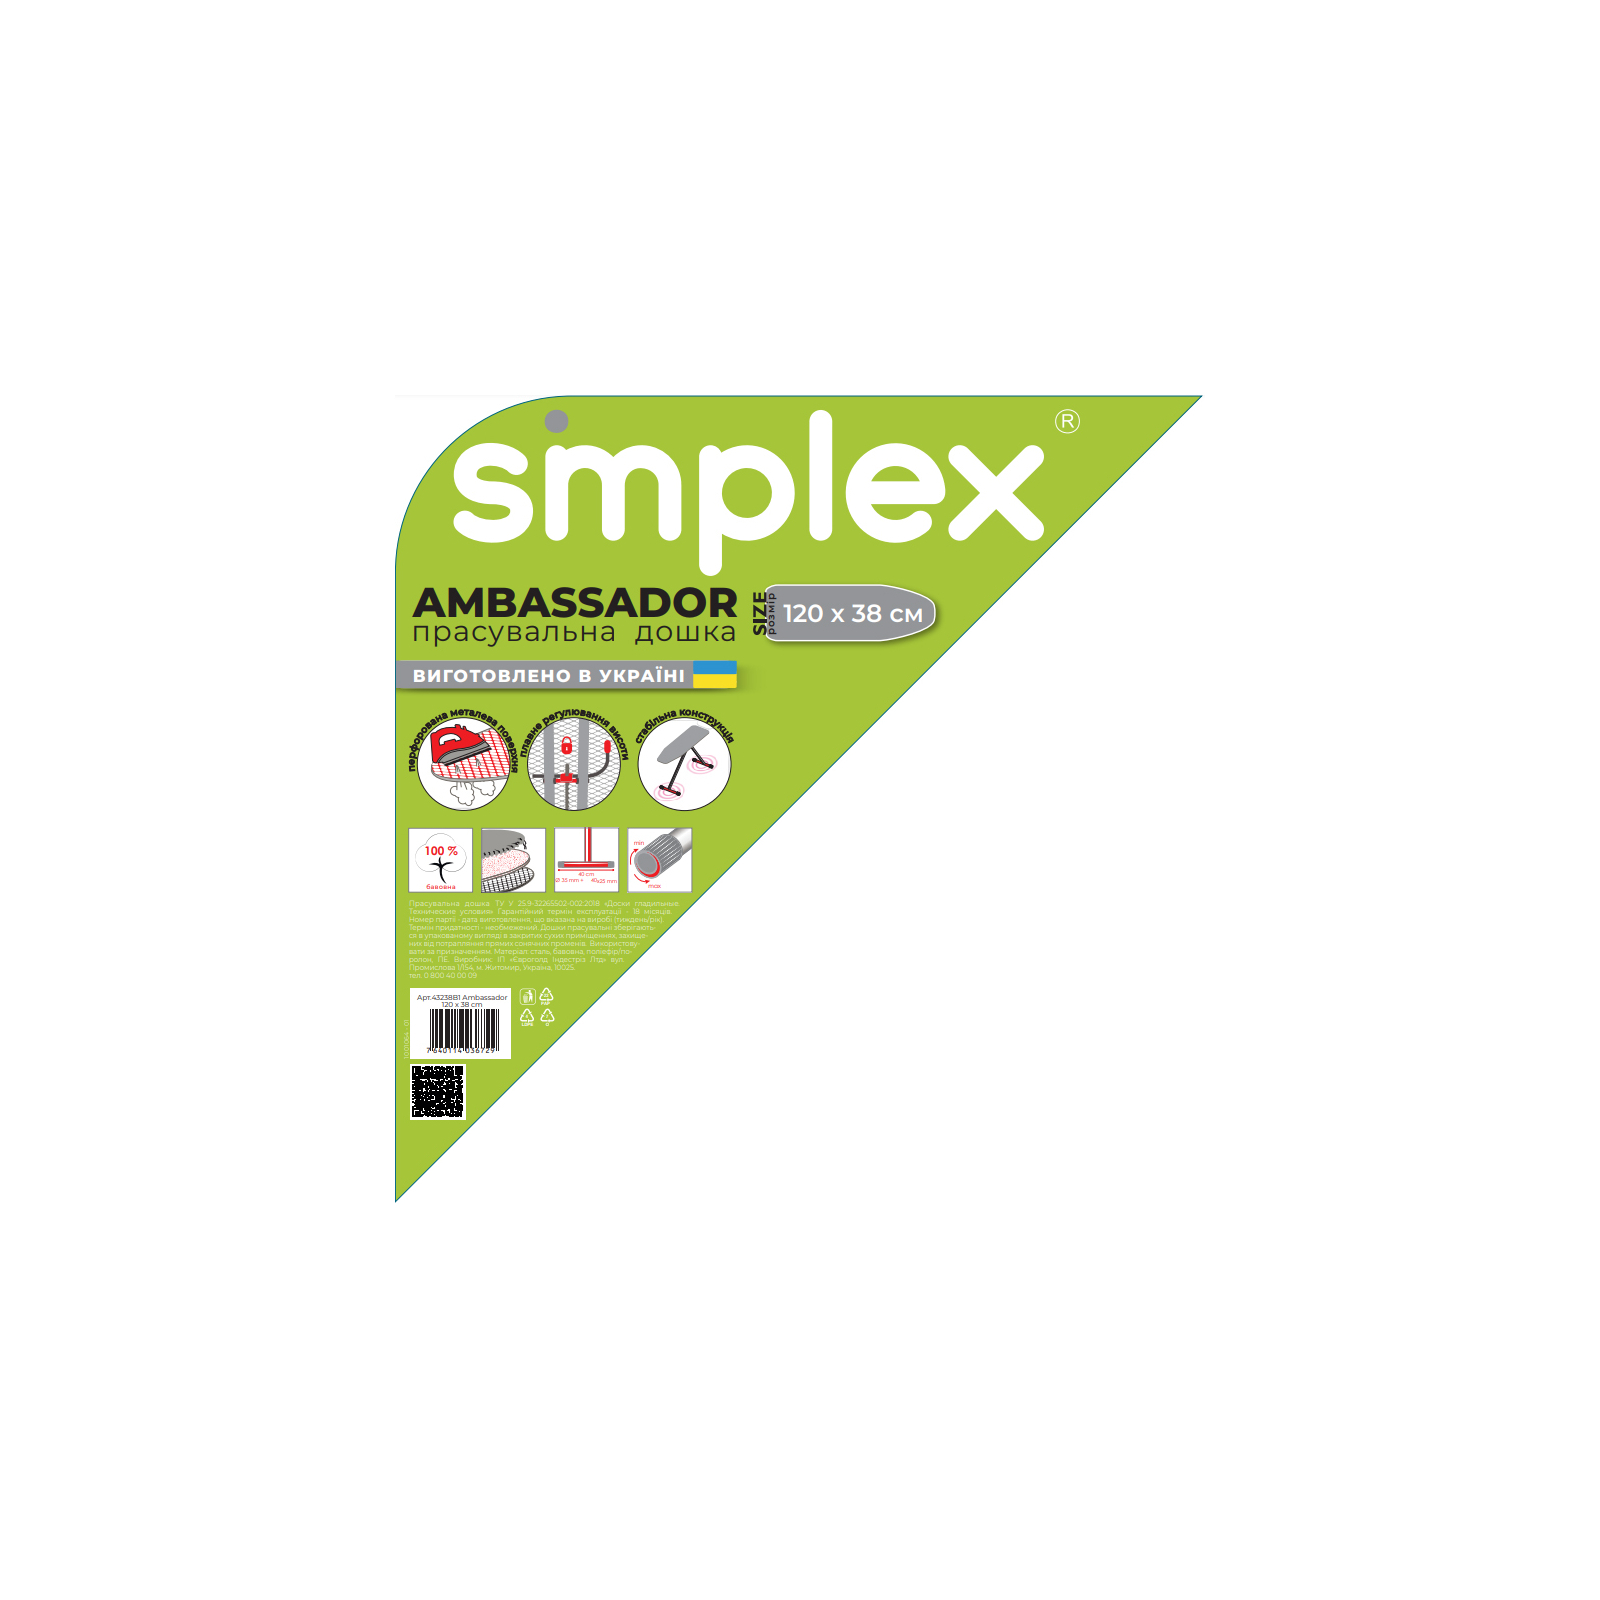 Прасувальна дошка Simplex 120 х 38 см (43238B1) зображення 2